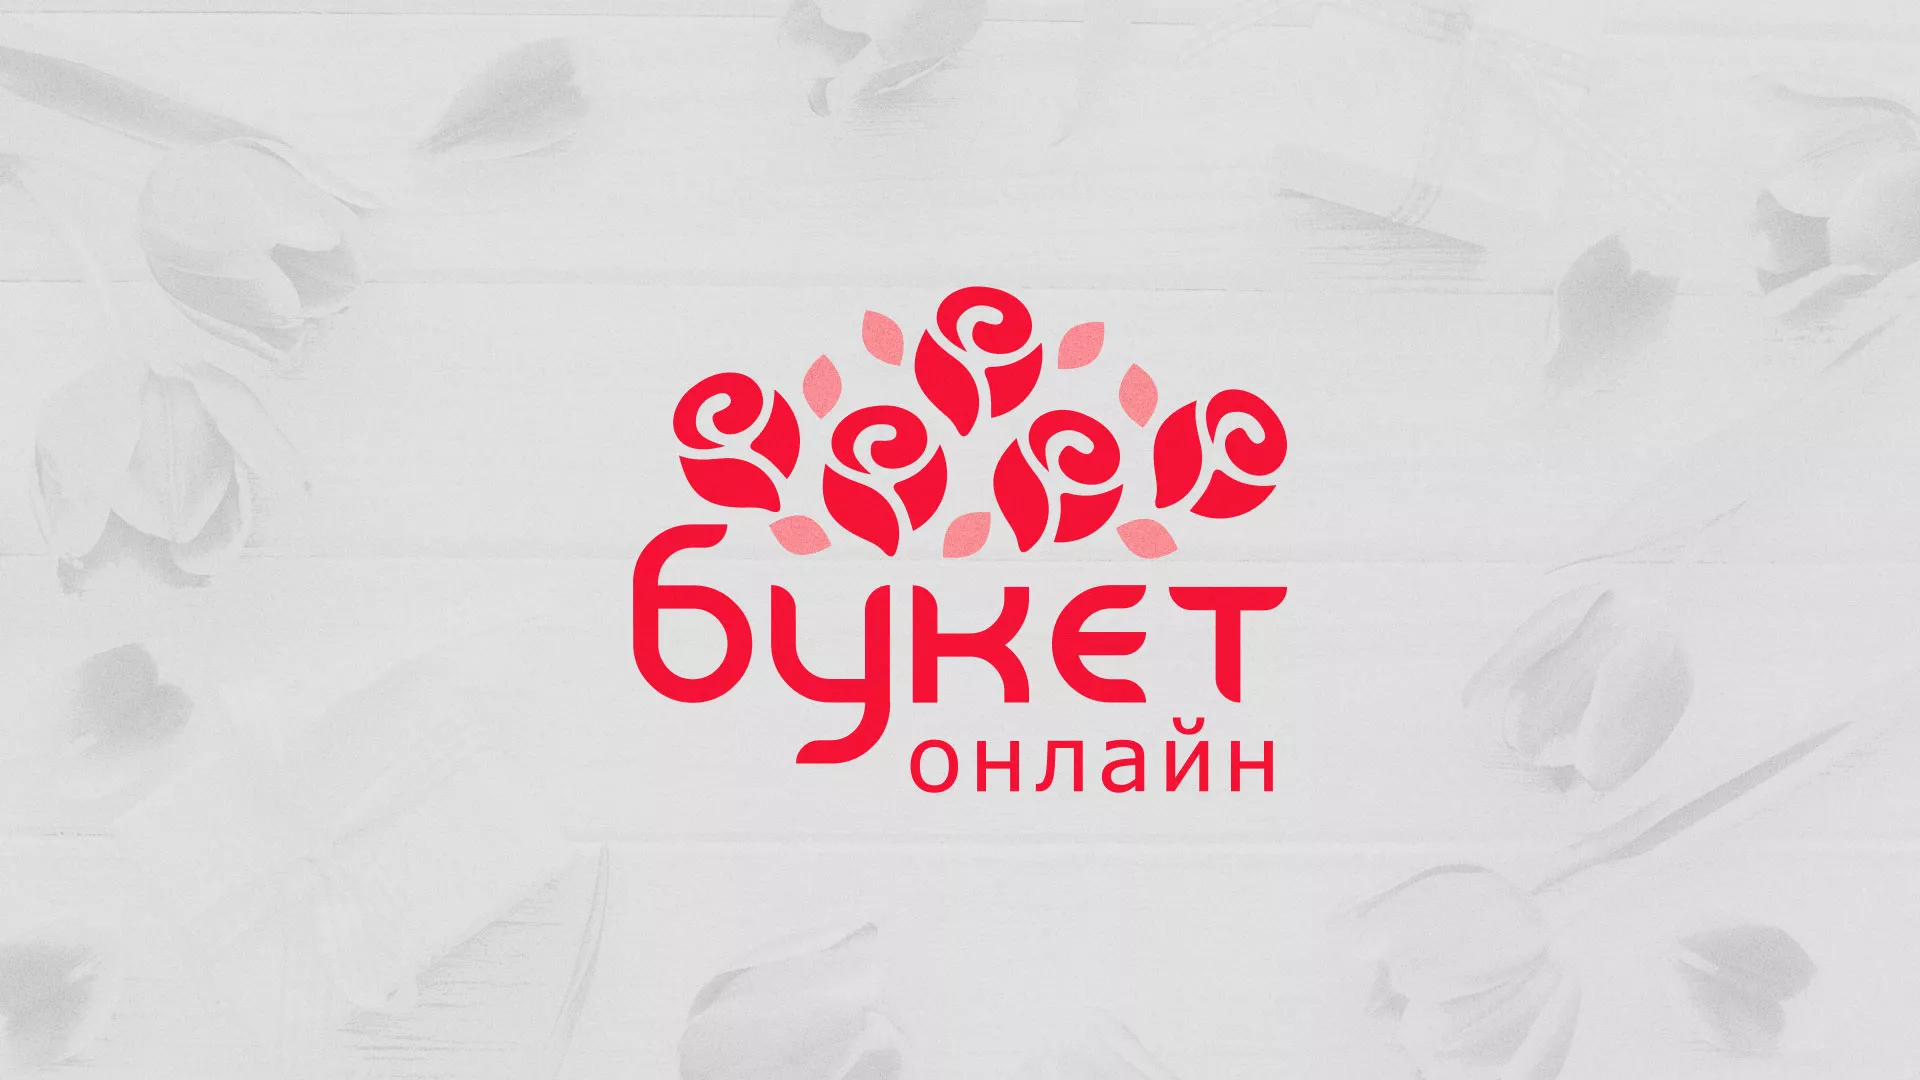 Создание интернет-магазина «Букет-онлайн» по цветам в Улане-Удэ